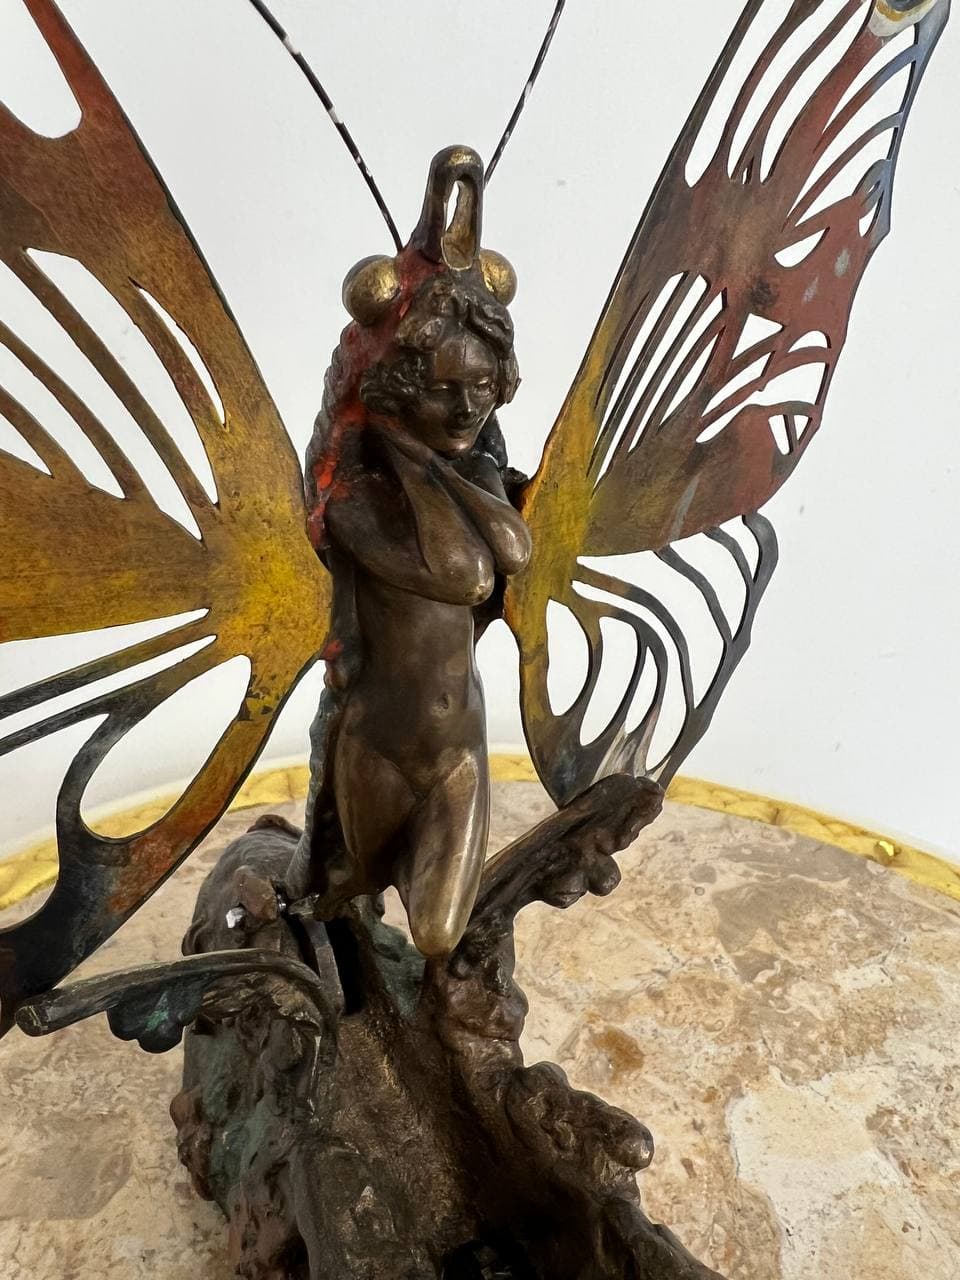 Коллекционная антикварная скульптура «Метаморфозы» (Metamorphosis) авторства Карла Каубы